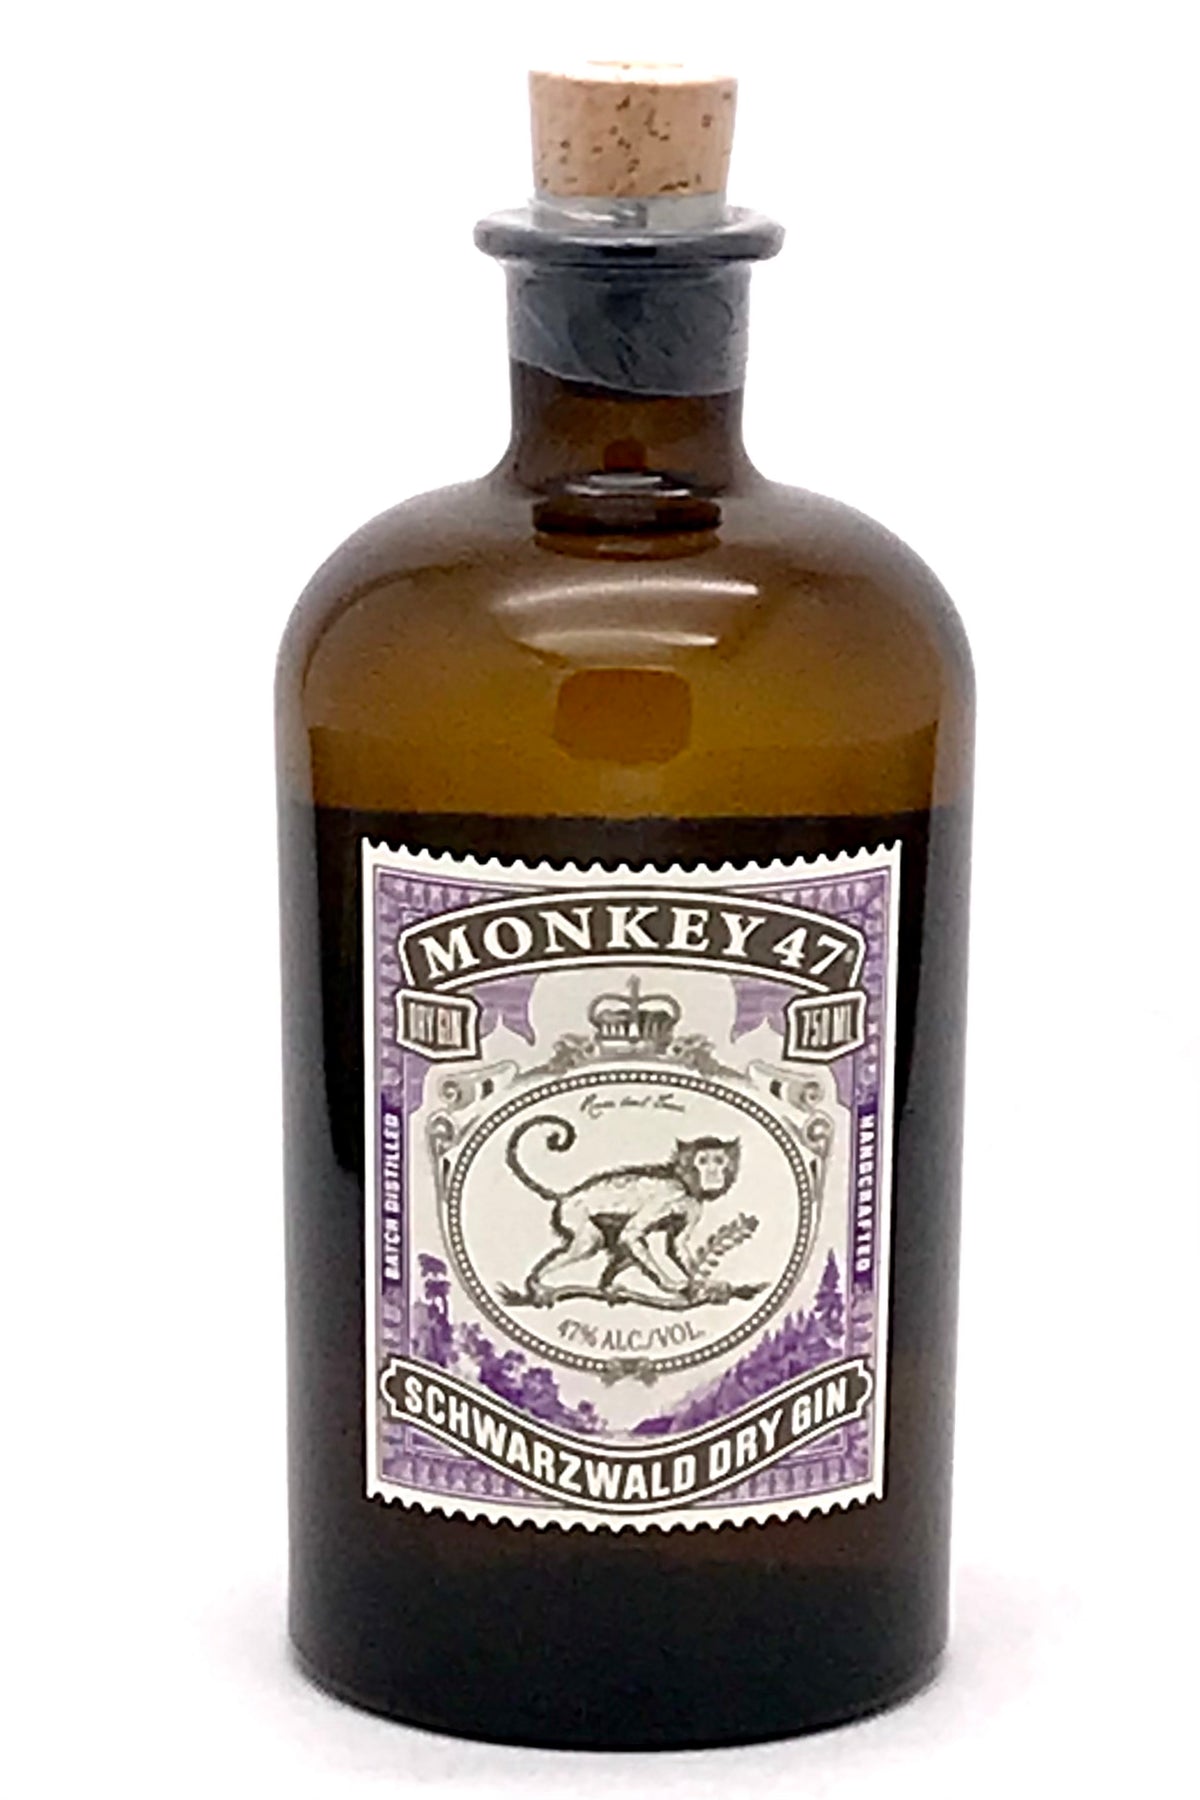 Monkey 47 Schwarzwald Dry Gin 750 ml